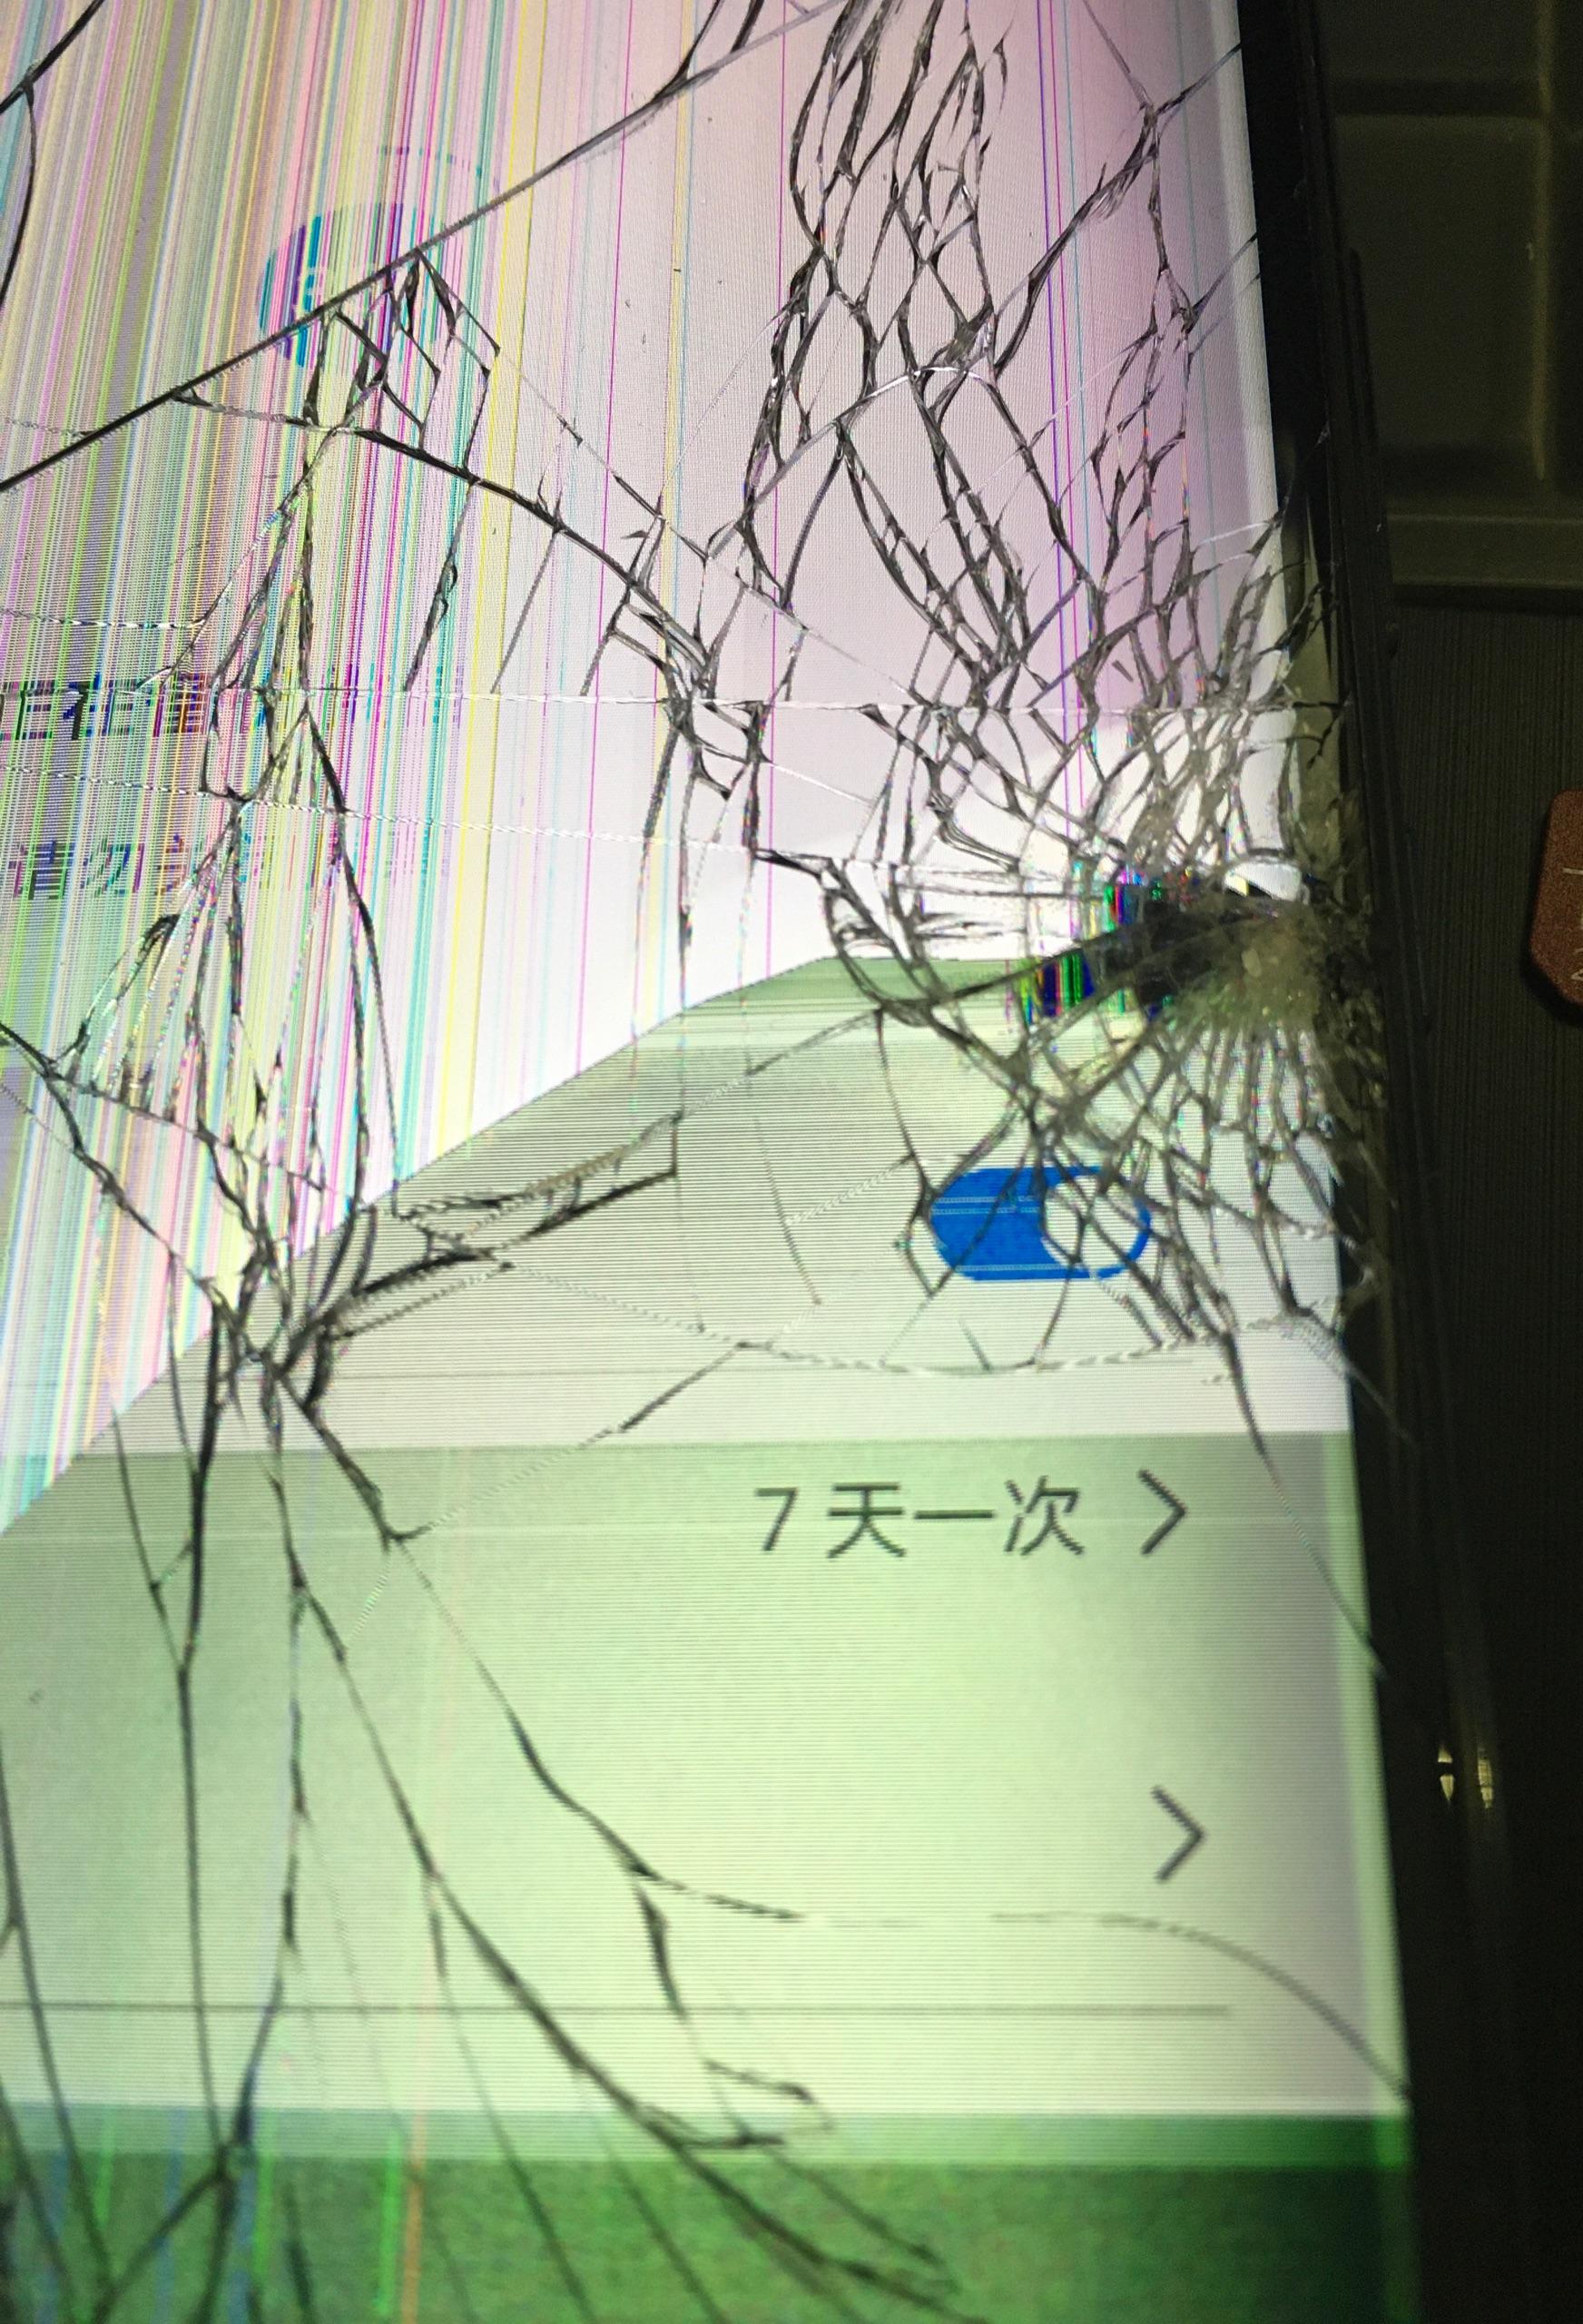 戴套+强化膜的iPhoneX惨烈阵亡：疼哭-iPhone X,保护壳,碎屏 ——快科技(驱动之家旗下媒体)--科技改变未来